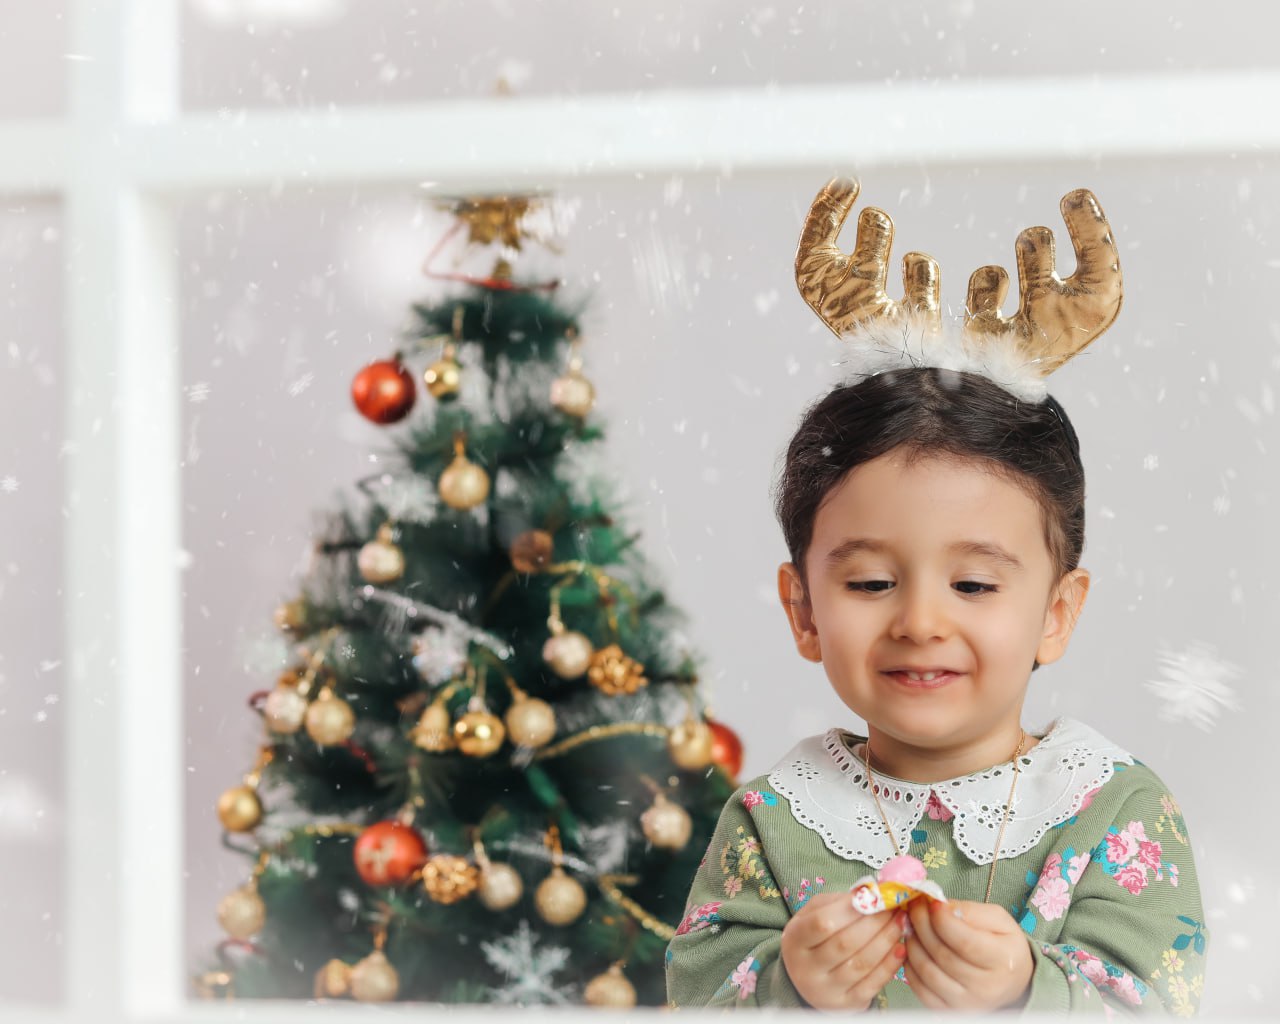 آتلیه کودک تیرشات | آتلیه کودک در چیتگر | دکور کریسمس | بهترین آتلیه کودک تهران | تم کریسمس | آتلیه کودک | عکاسی کریسمس | کریسمس | دکور سال نو میلادی | تزئینات کریسمس | آتلیه کودک